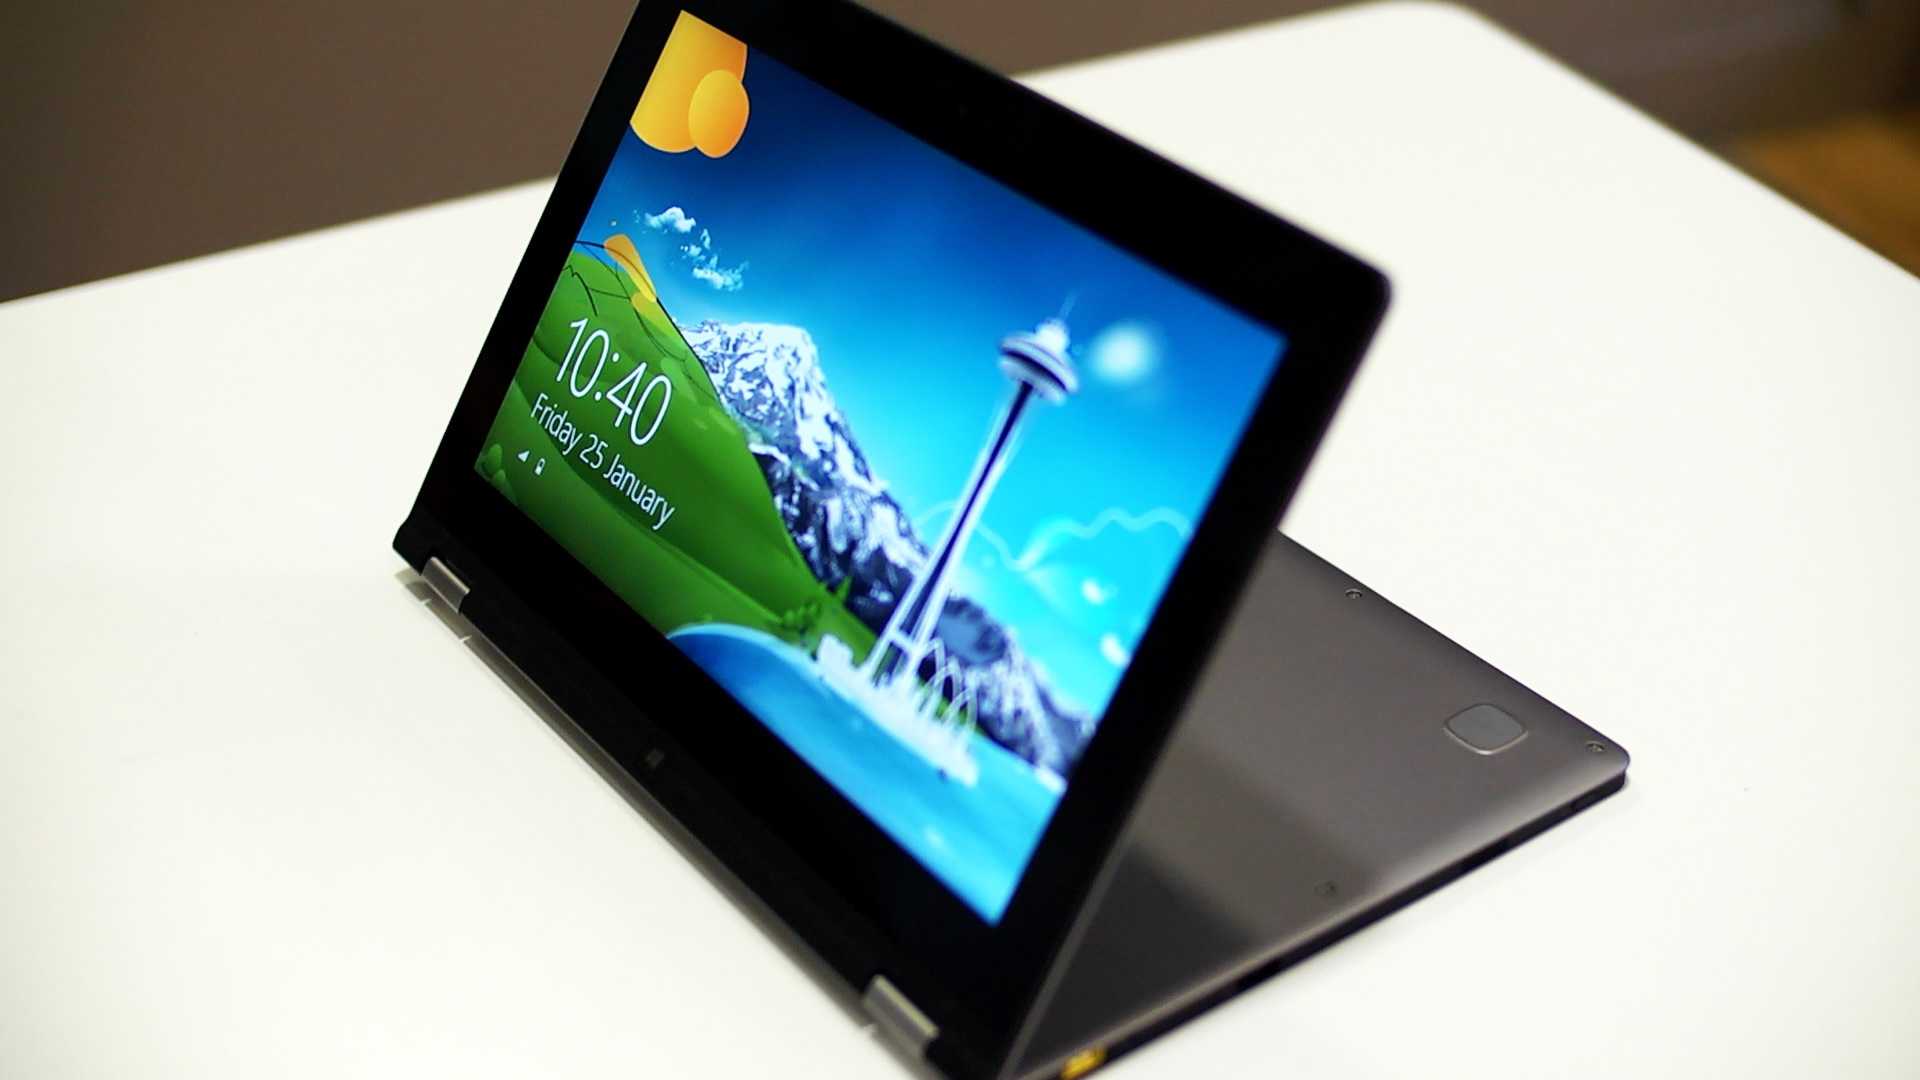 Планшет Lenovo IdeaPad Yoga 11 - подробные характеристики обзоры видео фото Цены в интернет-магазинах где можно купить планшет Lenovo IdeaPad Yoga 11